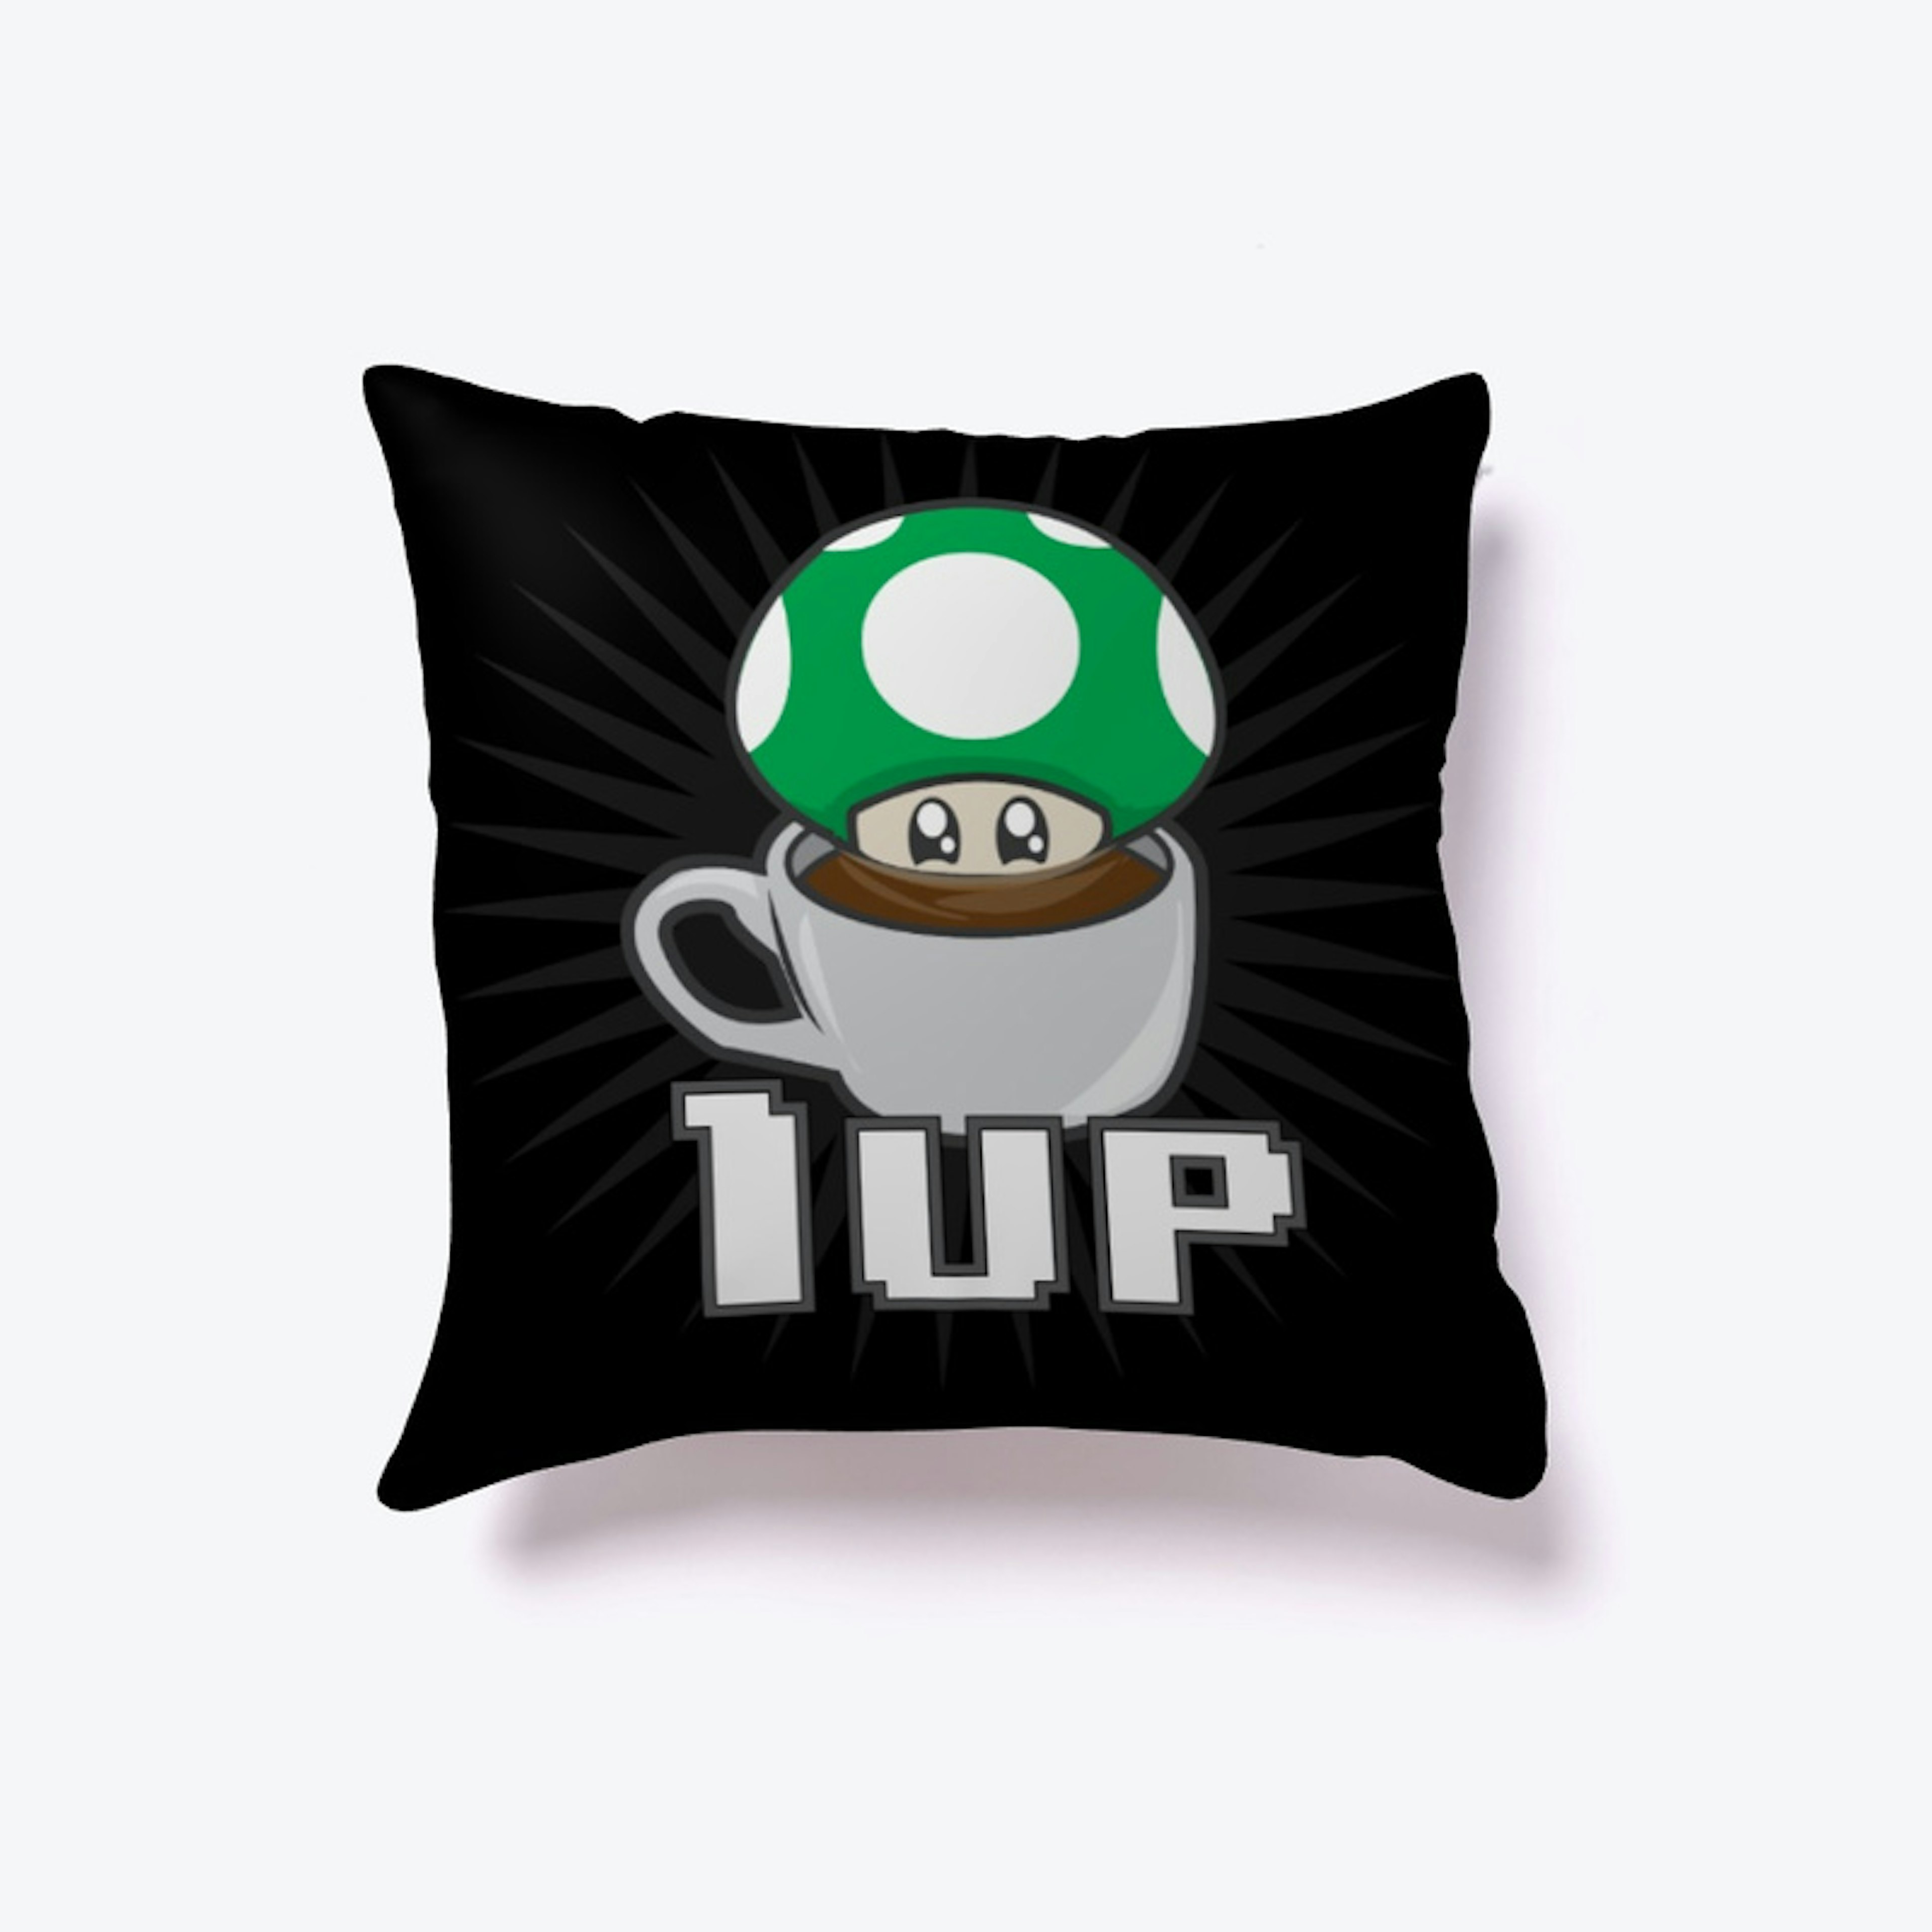 1-Up Coffee